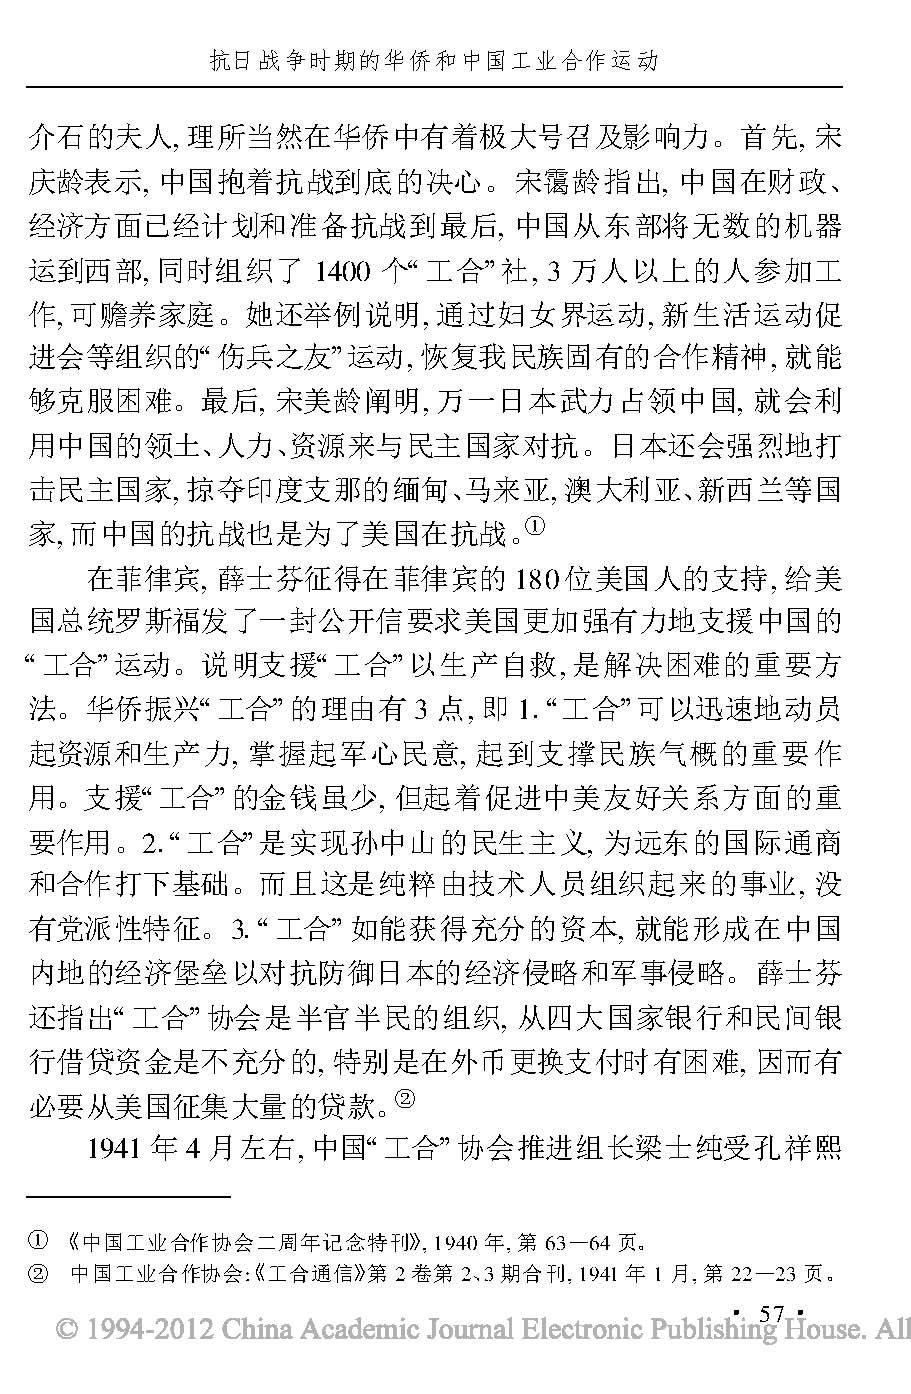 抗日战争时期的华侨和中国工业合作运动_页面_14.jpg